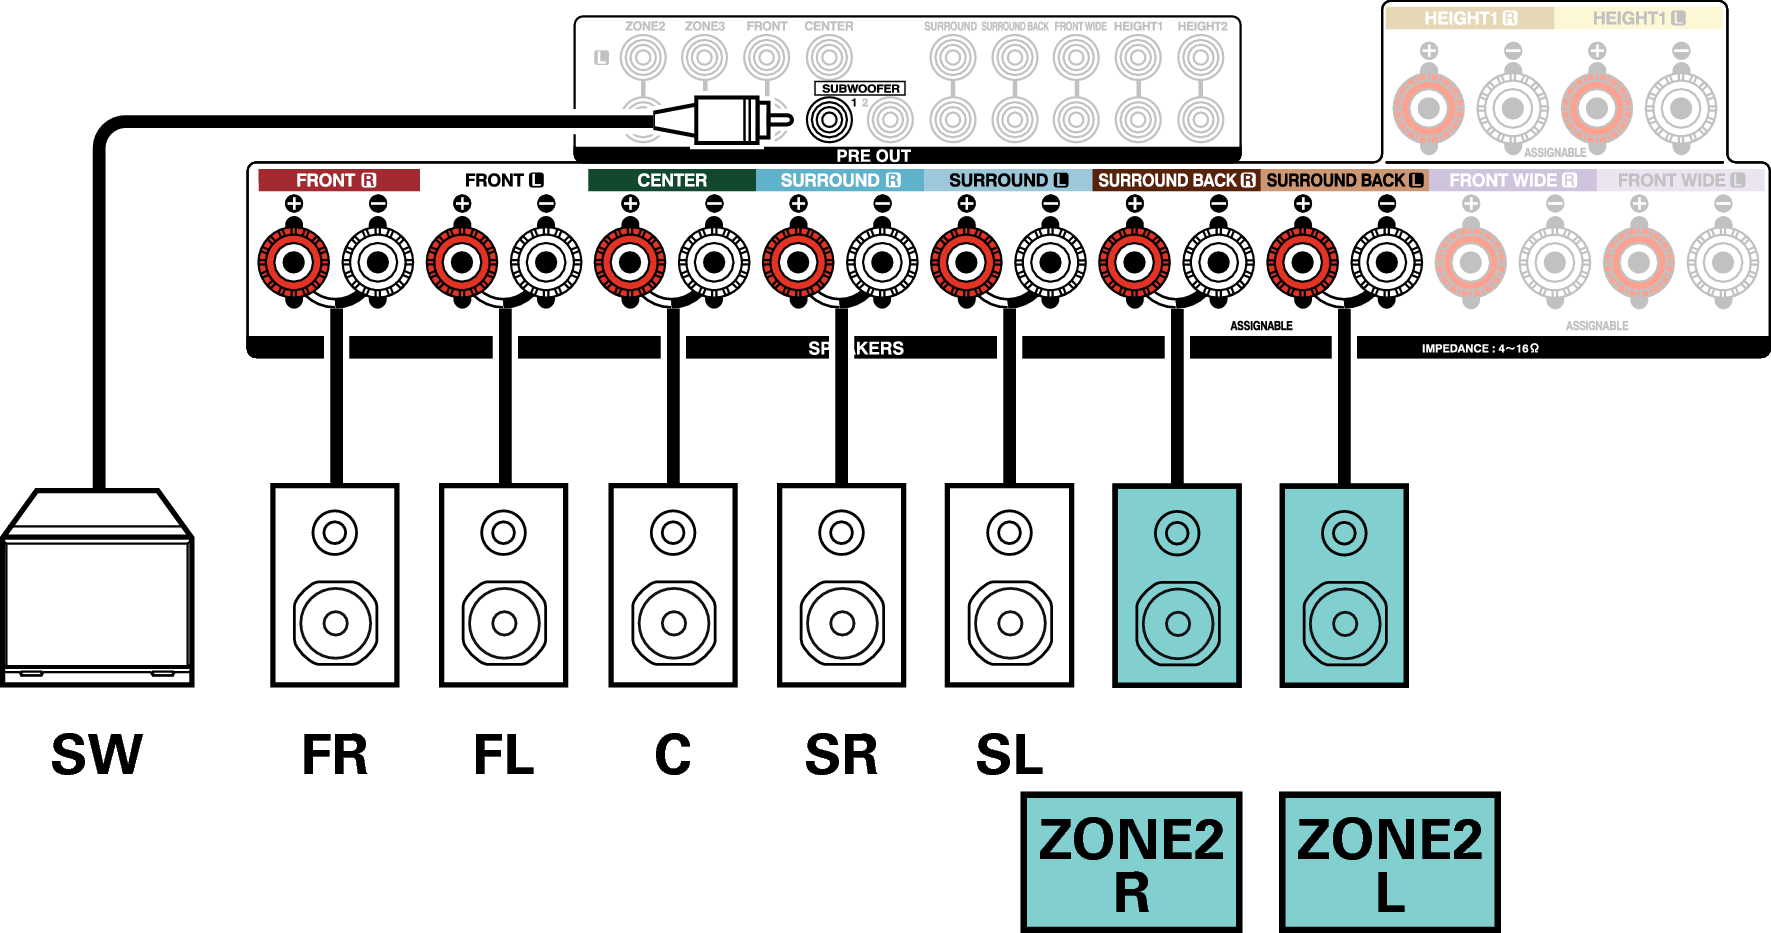 Conne SP 5.1 ZONE2 2ch X4200E3